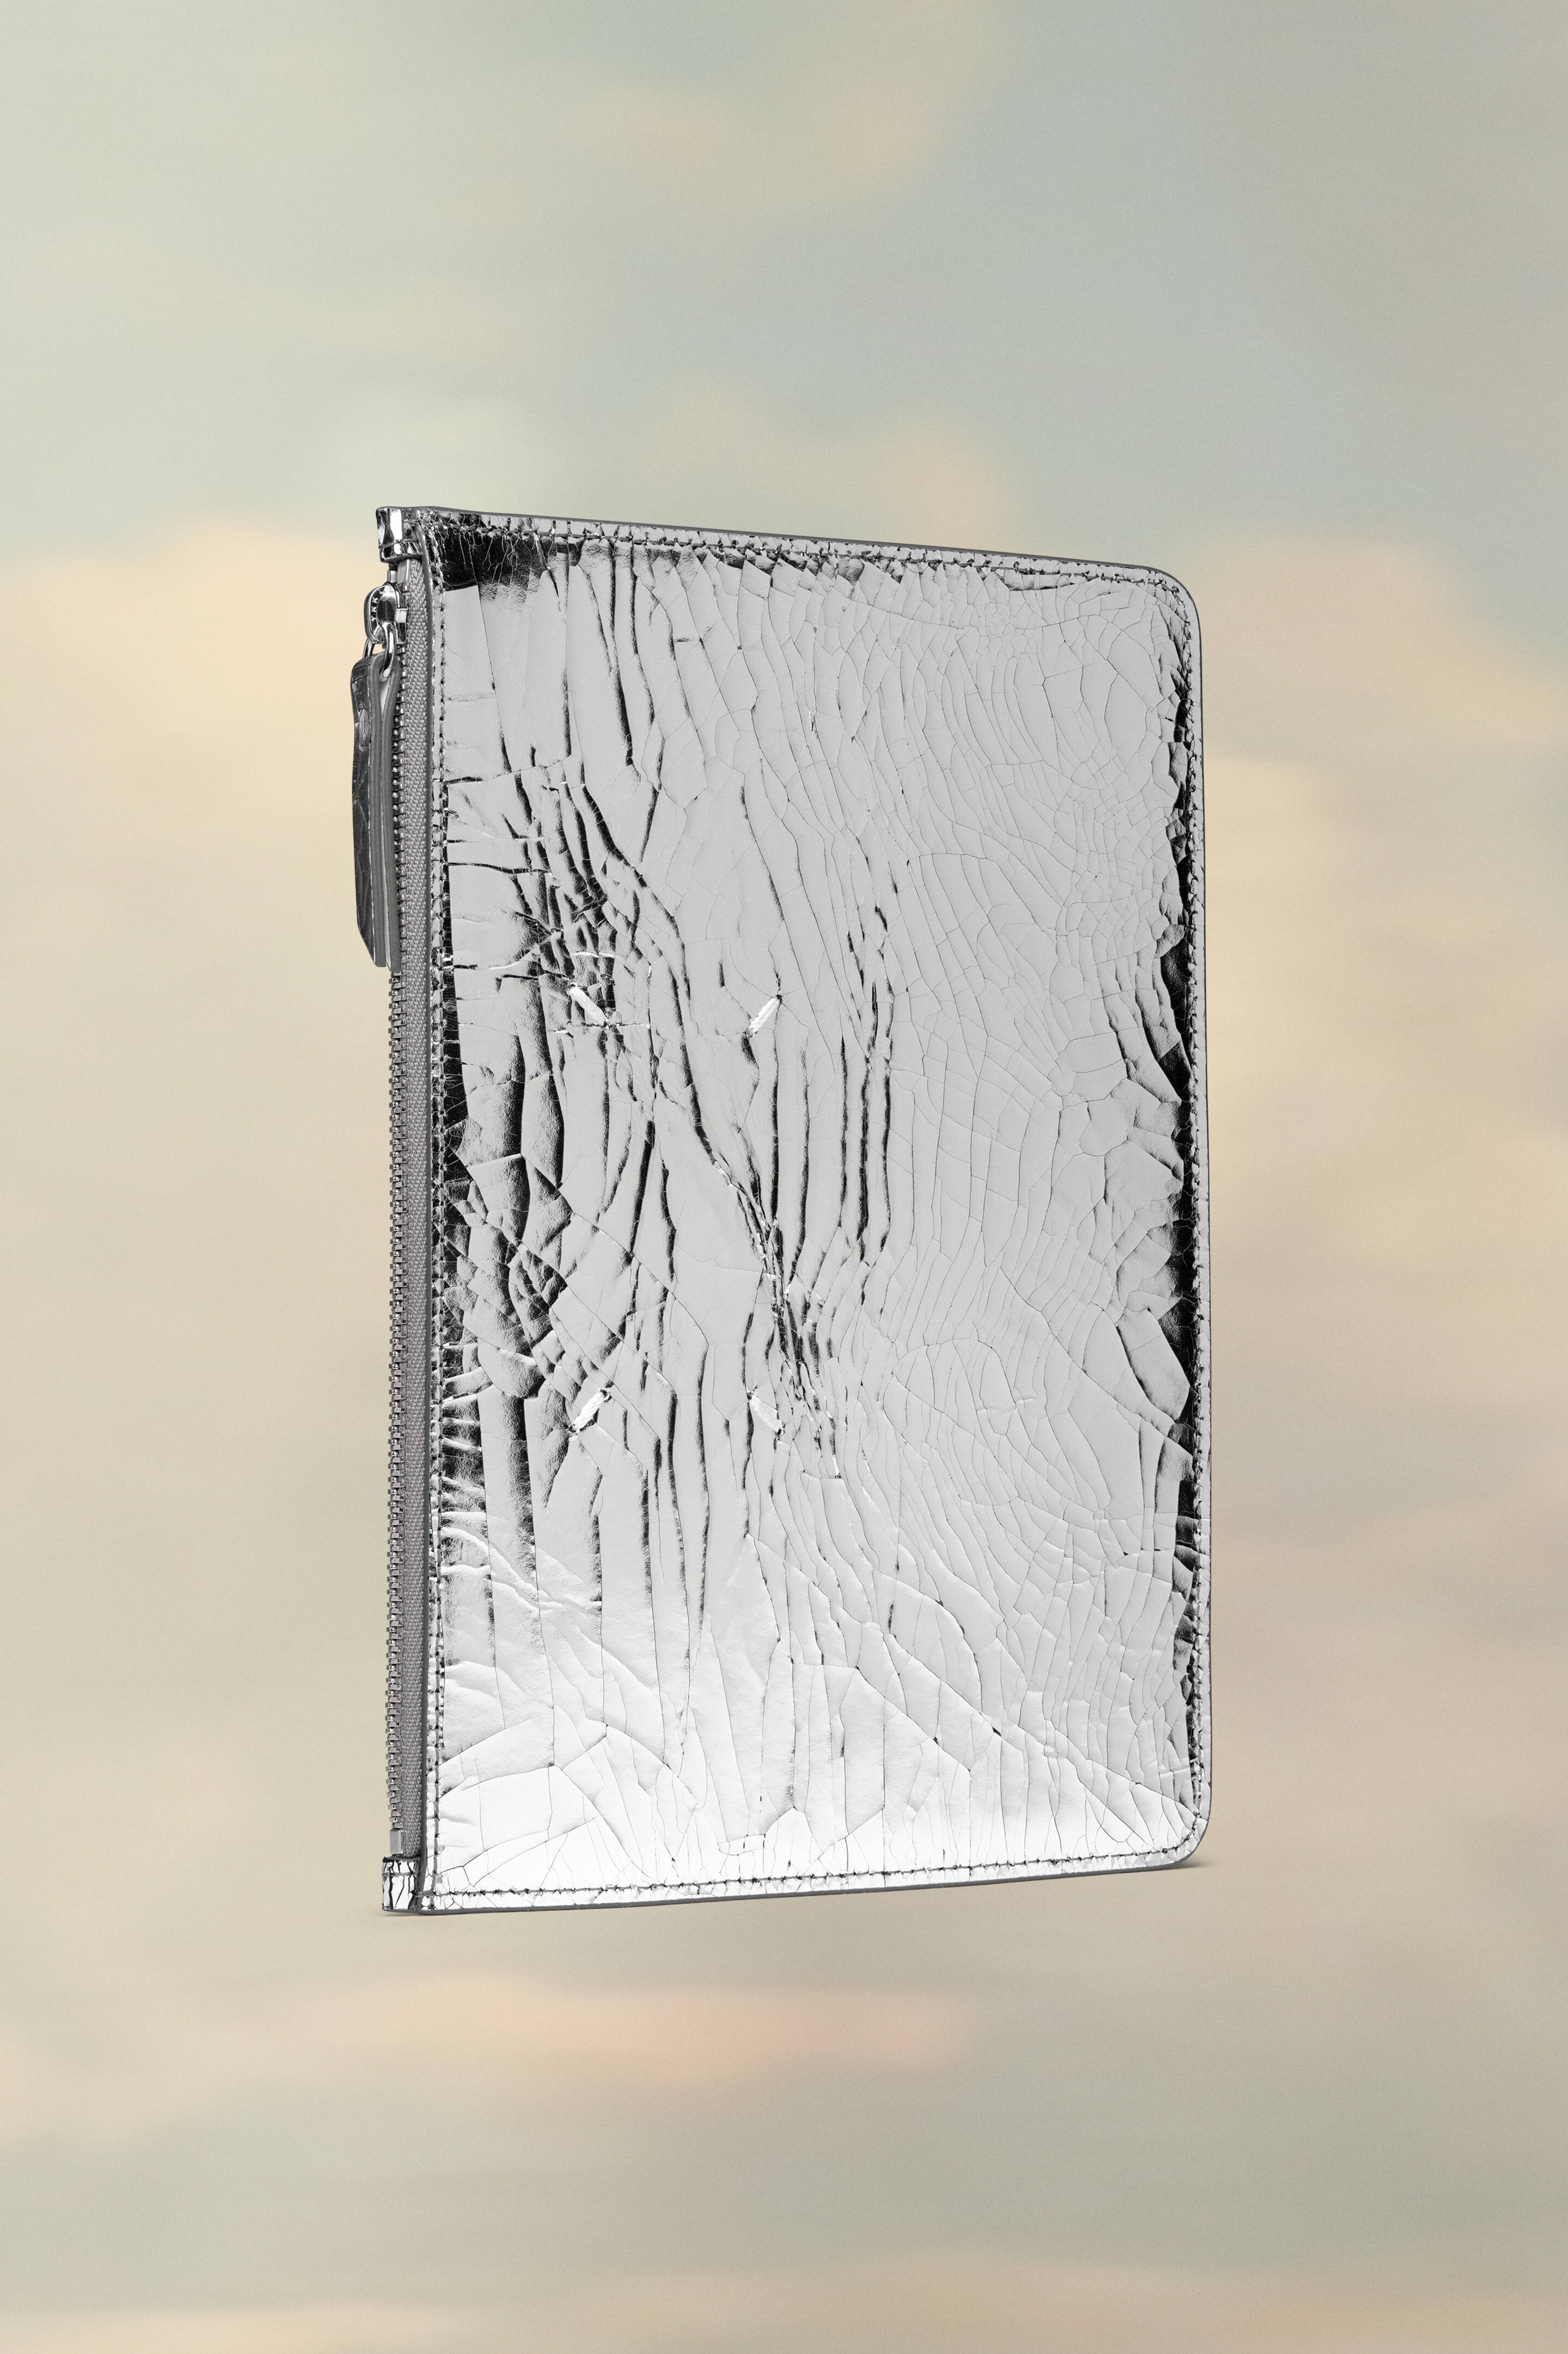 Broken mirror pouch - 2